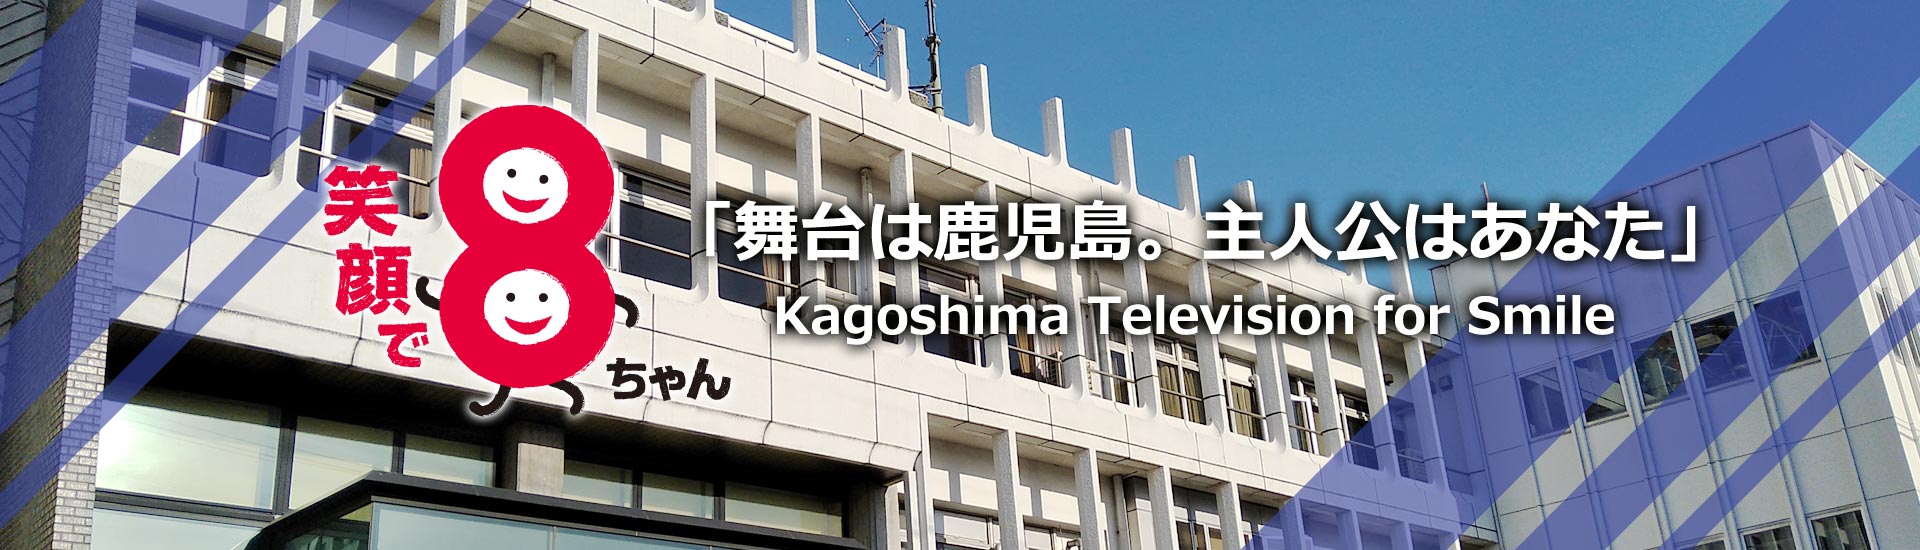 KTS鹿児島テレビ